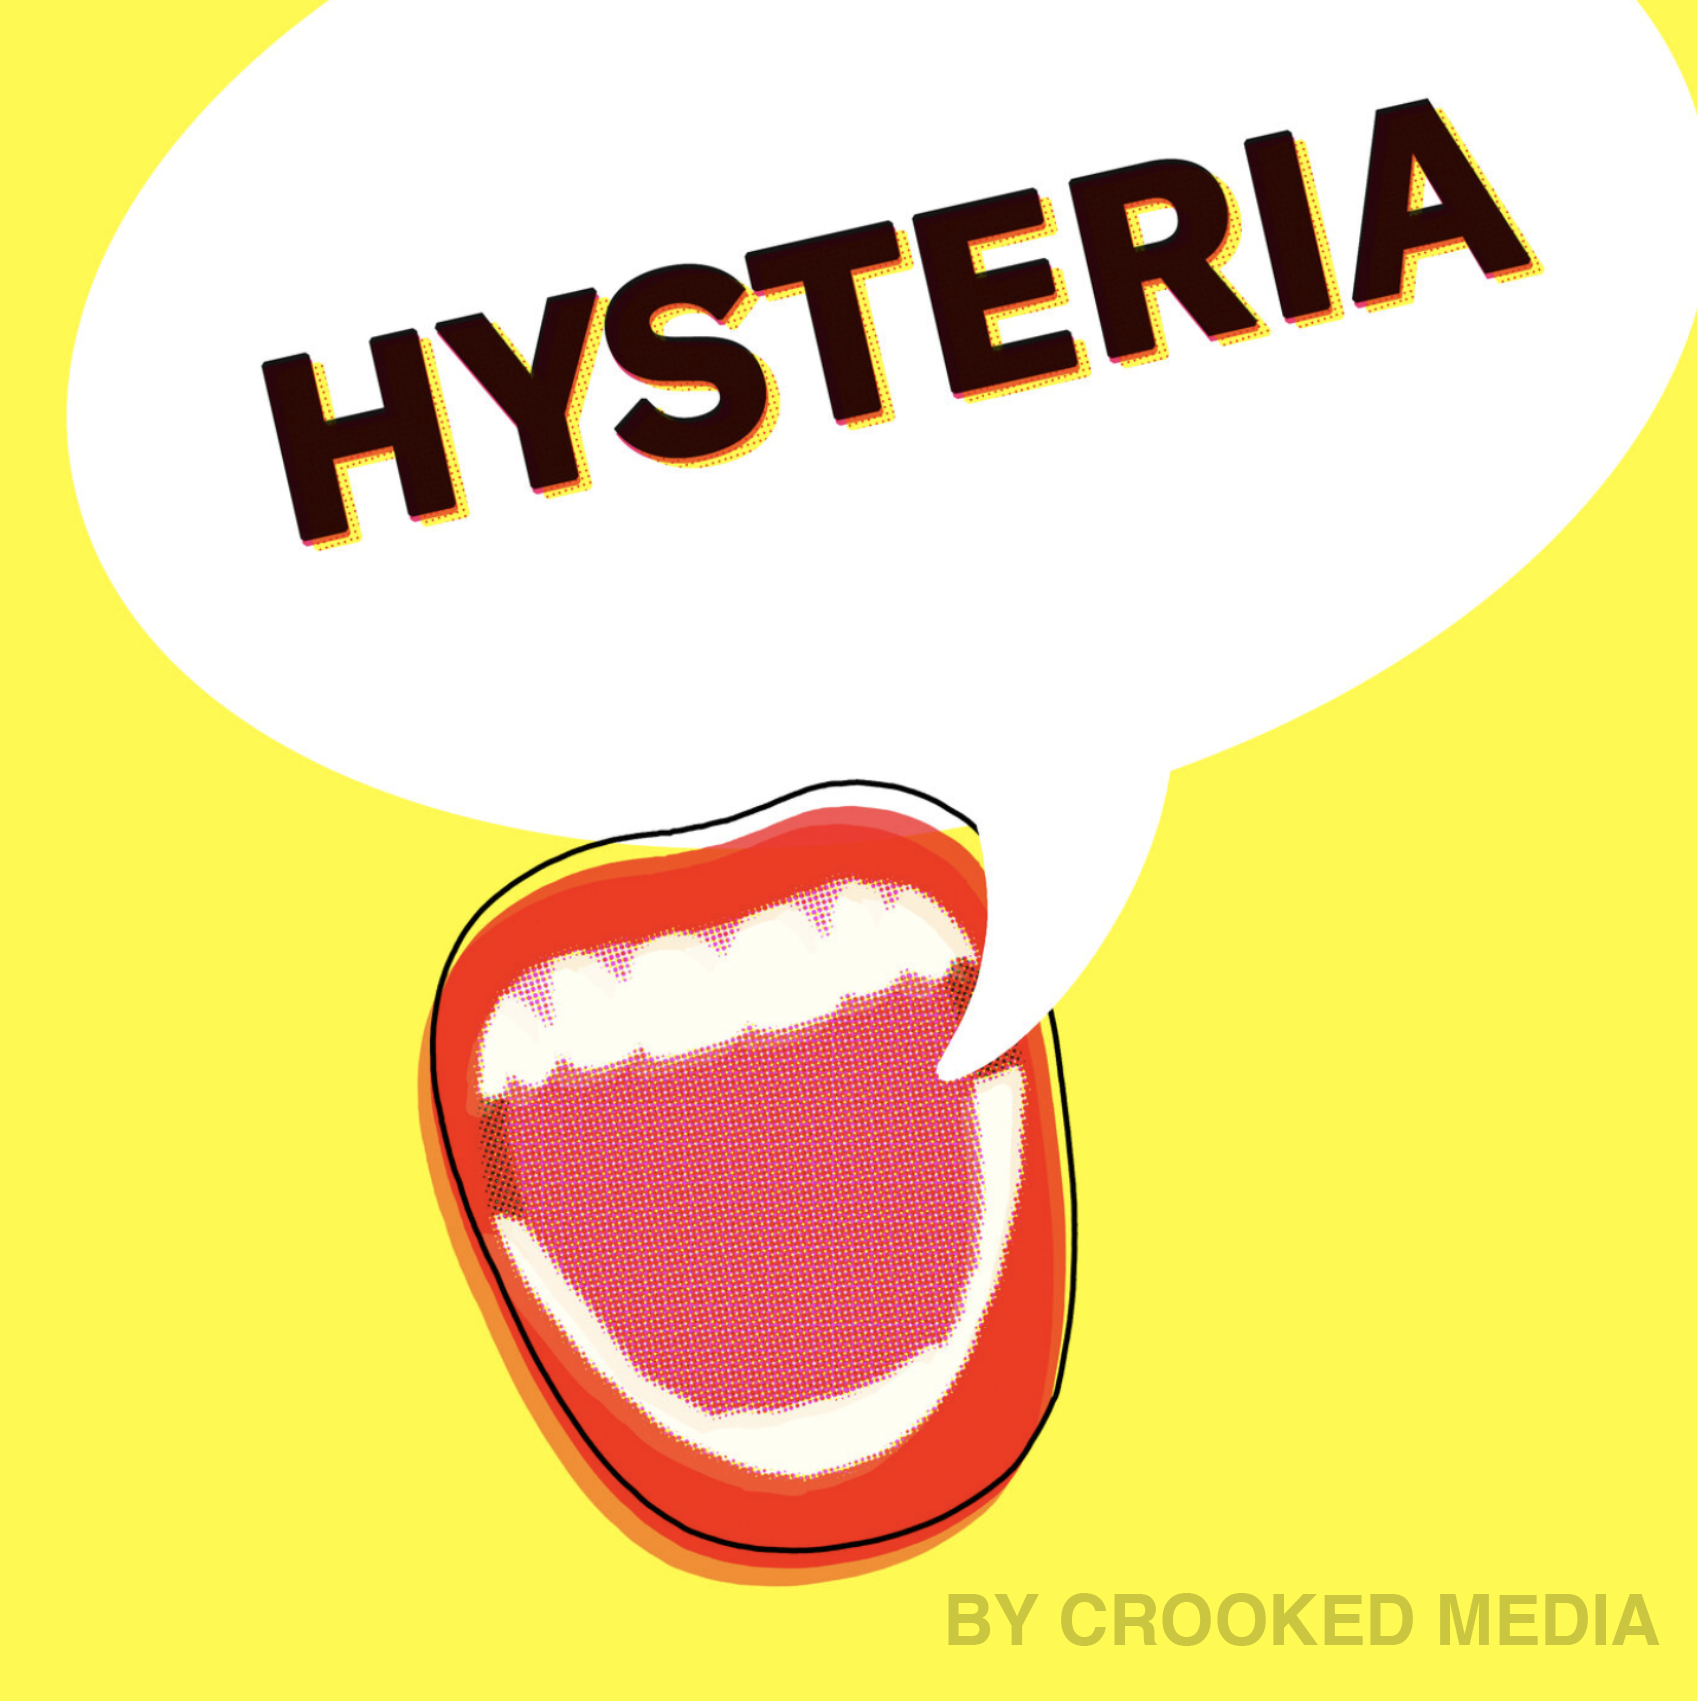 Hysteria copy